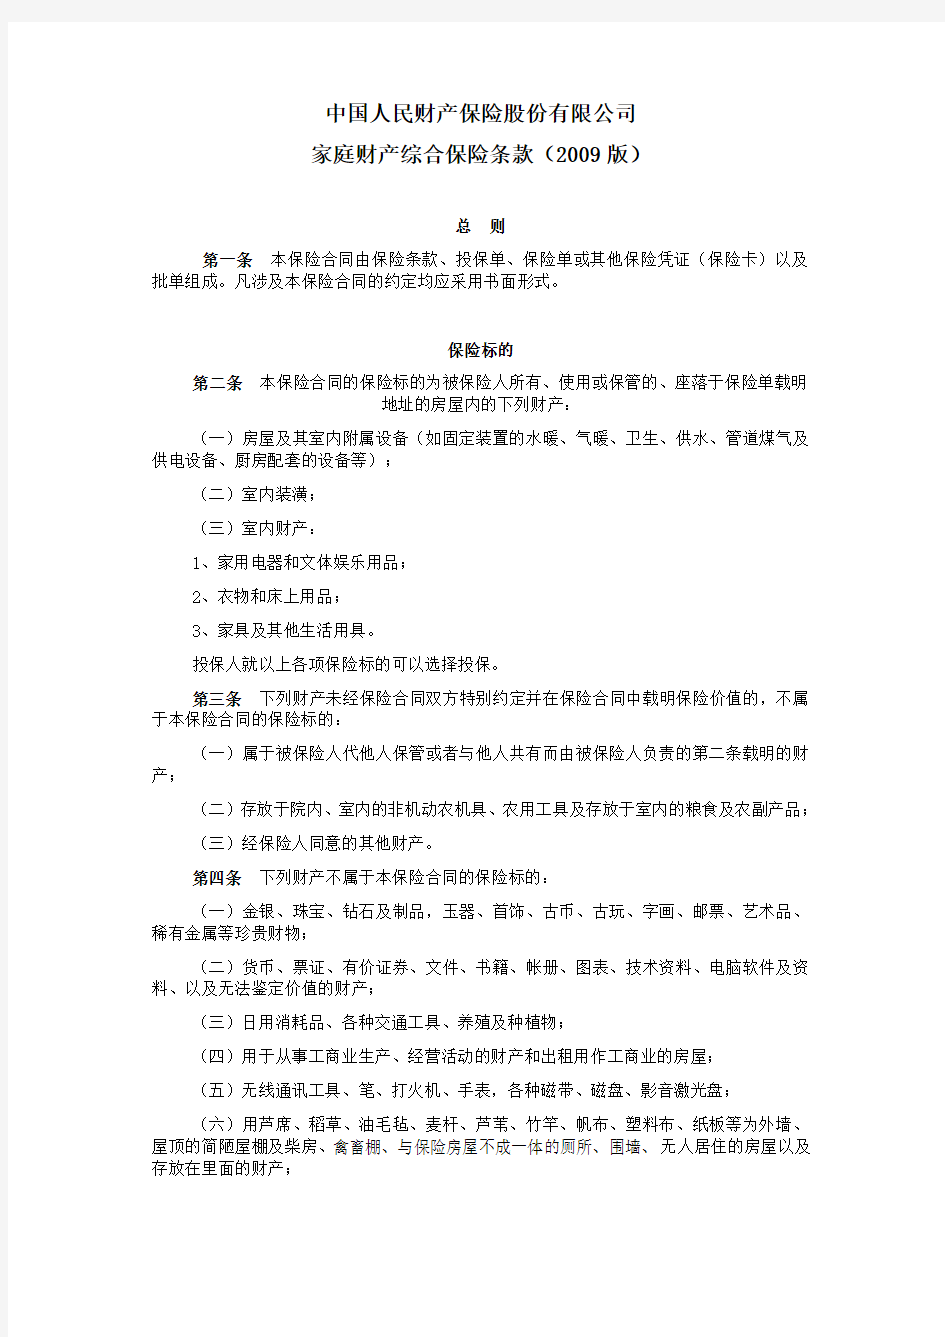 中国人民财产保险股份有限公司-家庭财产综合保险条款(2009版)